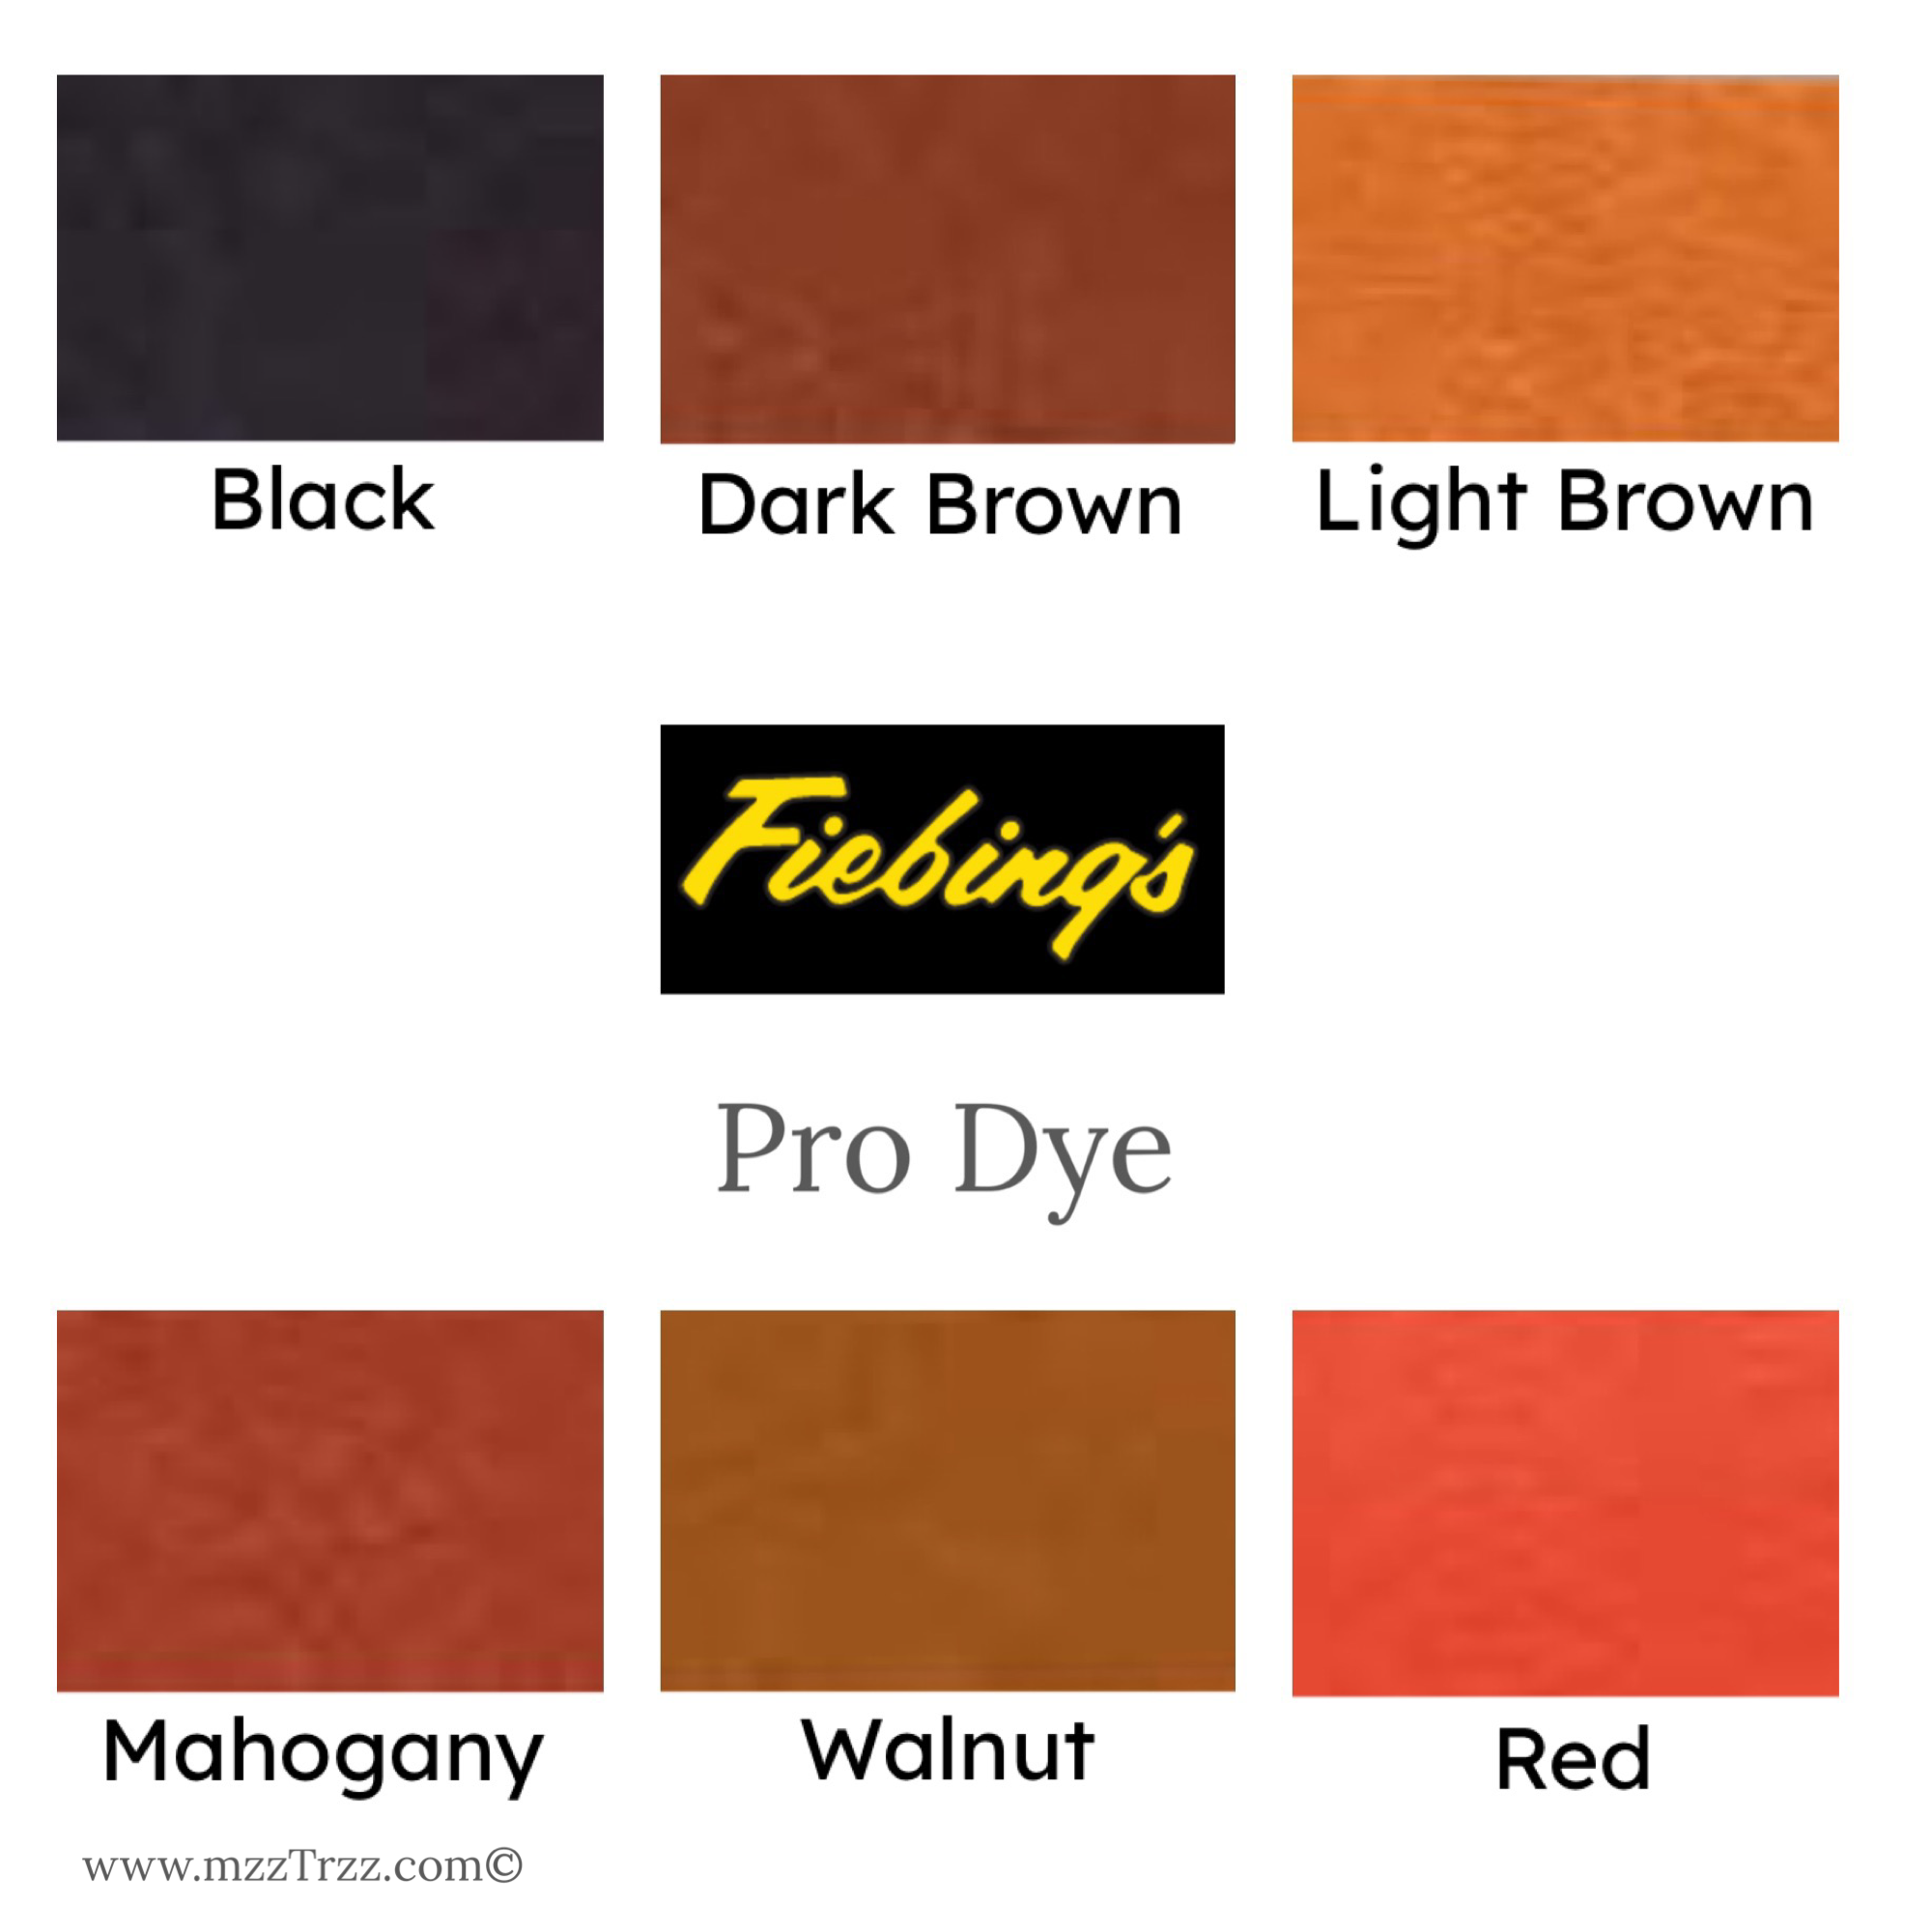 Fiebings Pro Dye - Light Brown, 32 oz